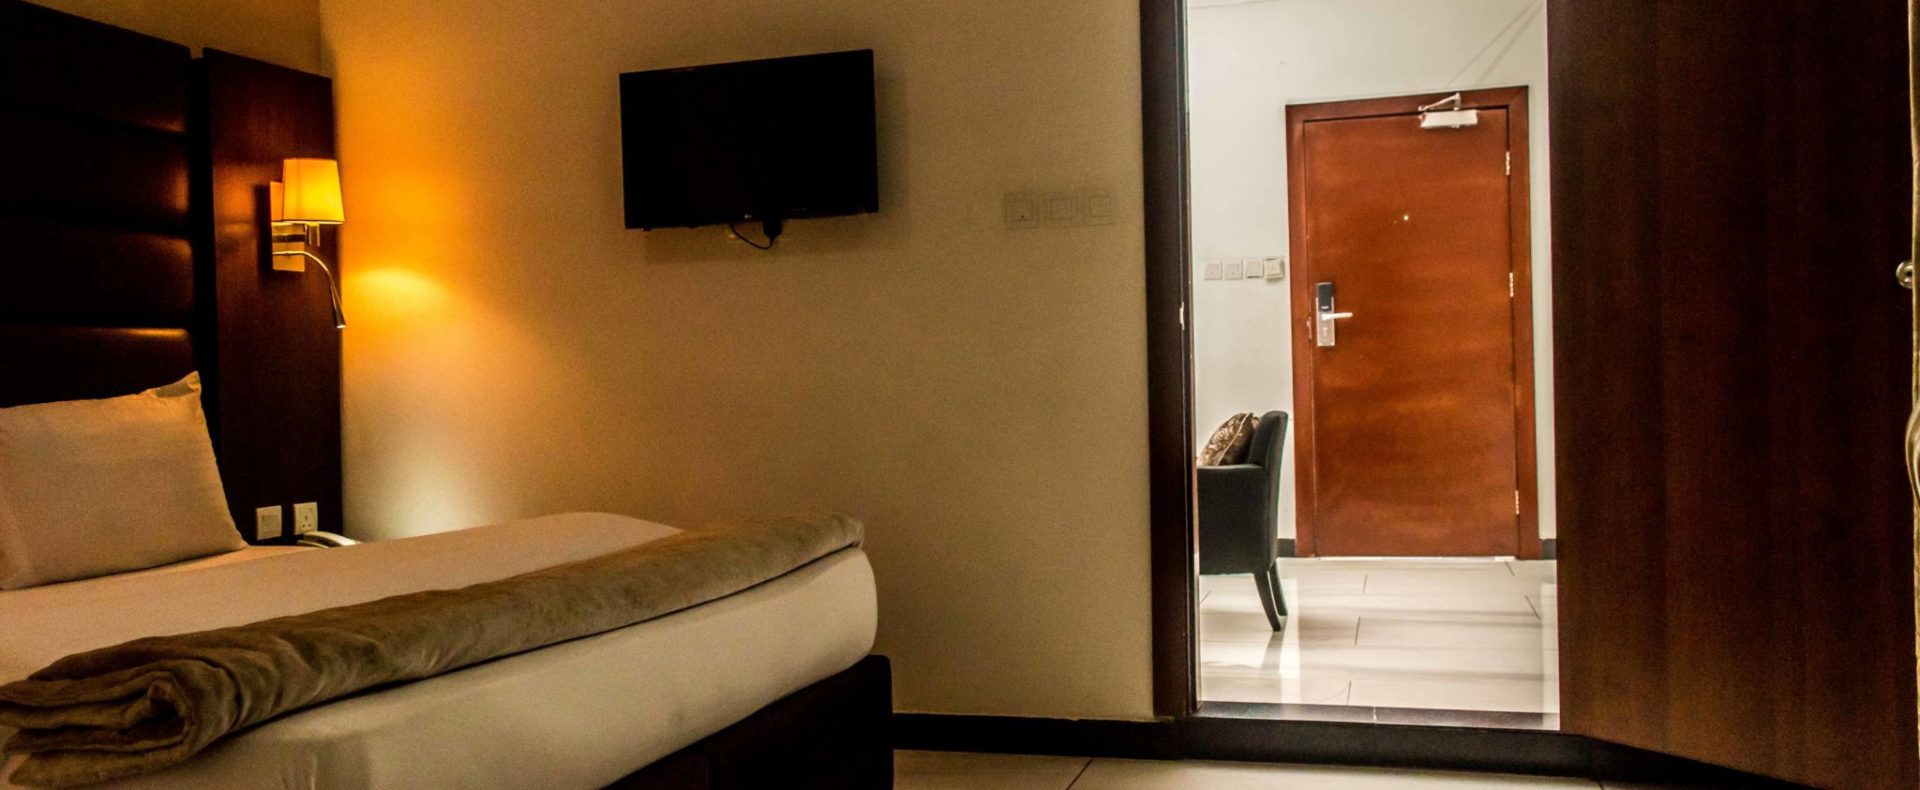 Hotel Diplomatic Suite In Lekki Lagos Nigeria